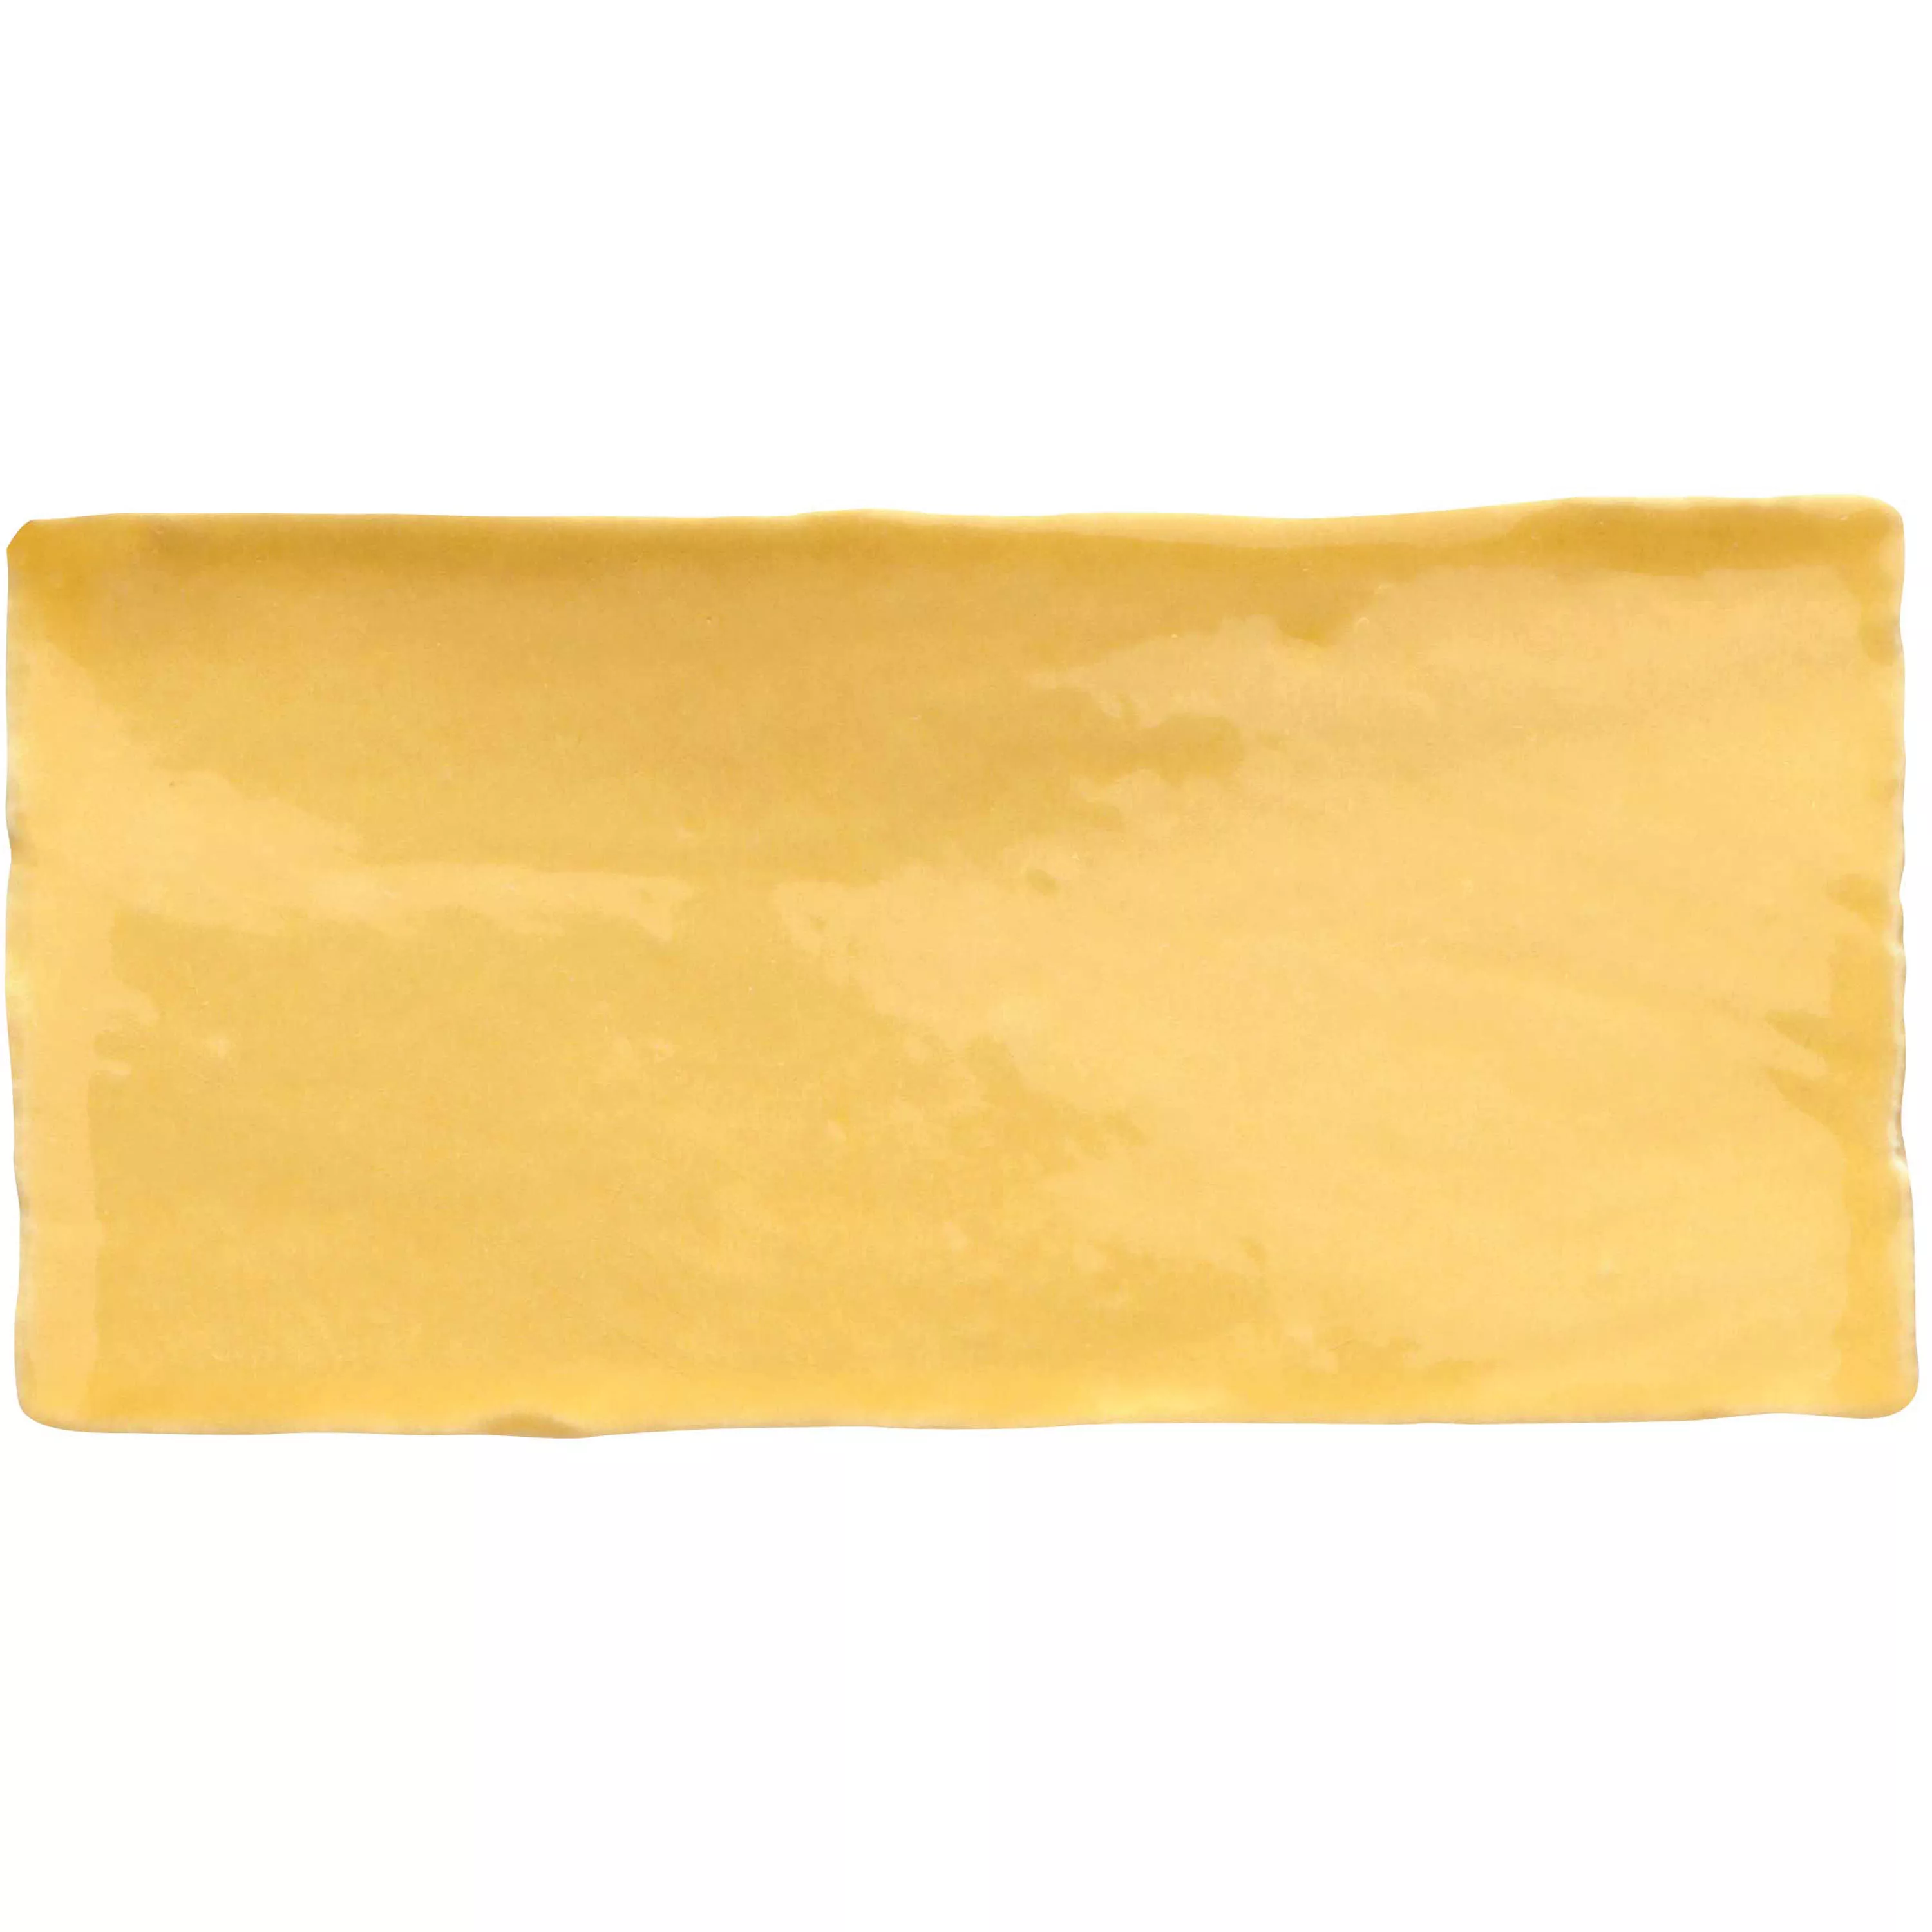 Próbka Płytki Ścienne Algier Wykonane Ręcznie 7,5x15cm Żółty